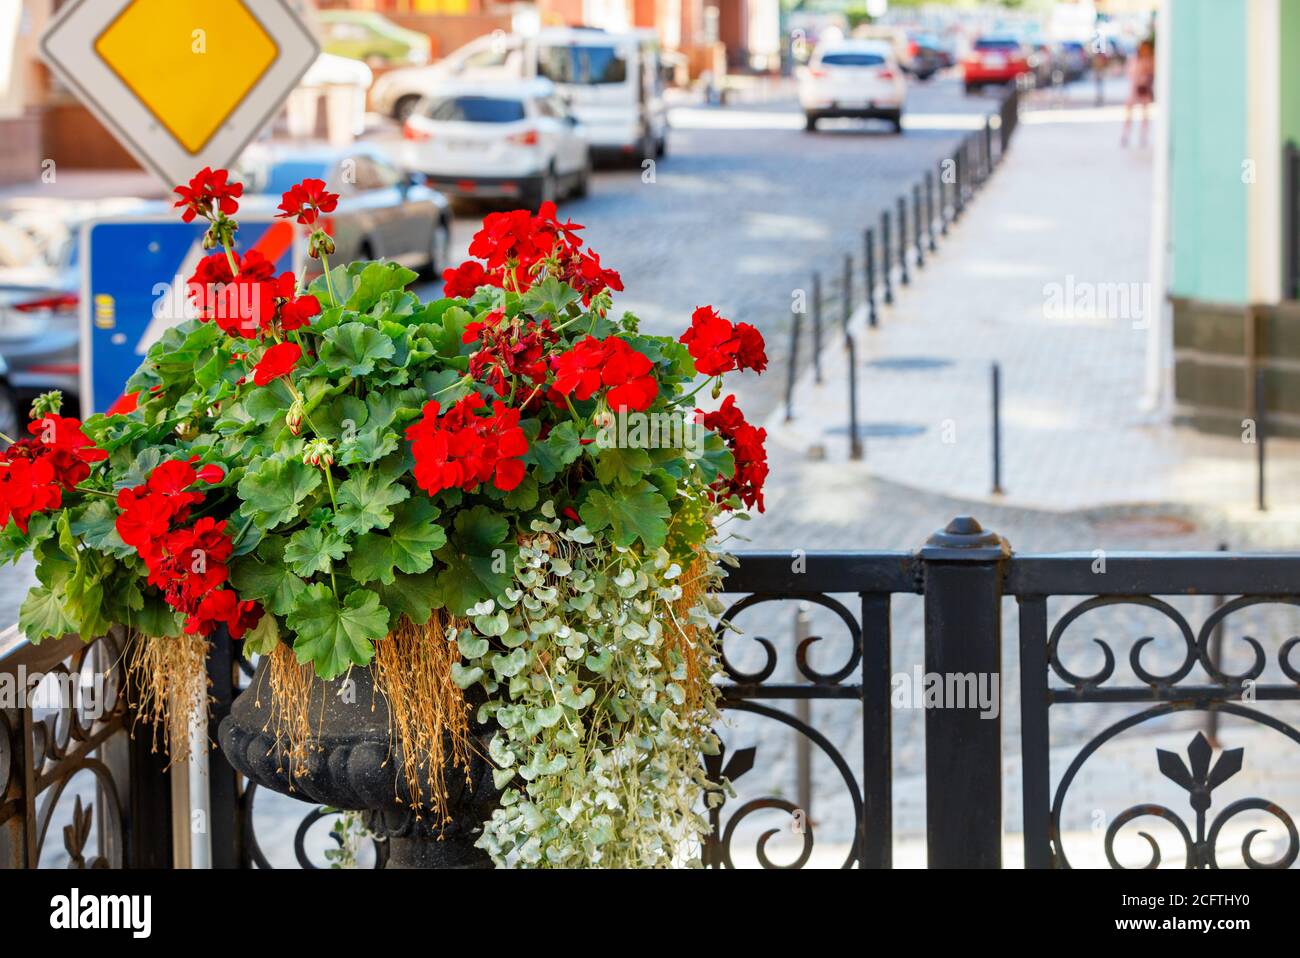 Un vase de géraniums rouge vif orne le balcon avant du bâtiment contre une rue de ville floue, foyer sélectif, espace de texte. Banque D'Images